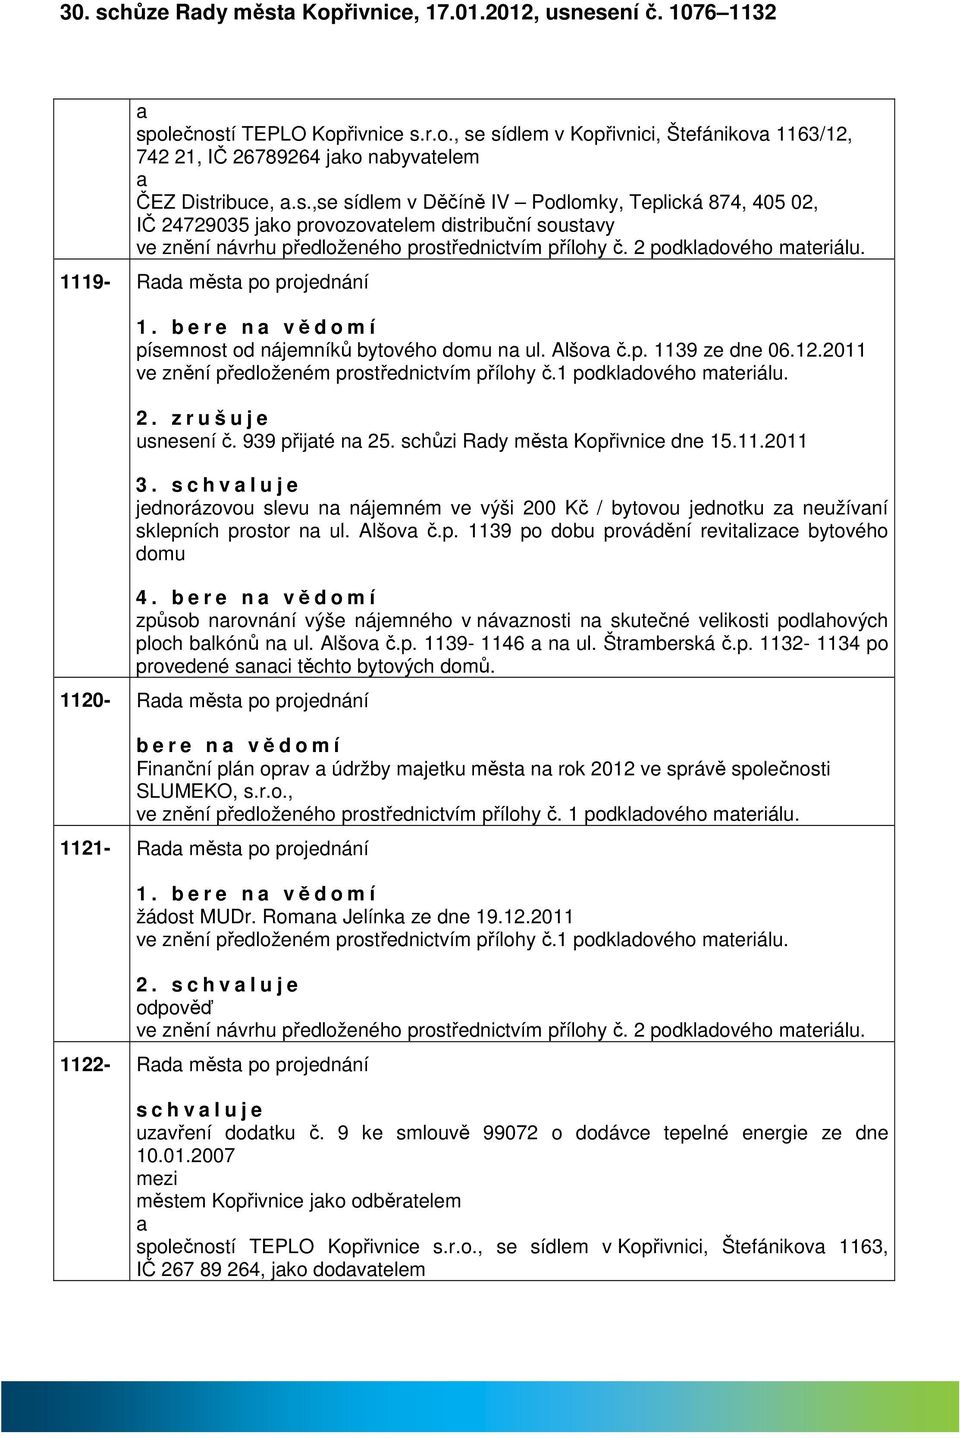 1 podkldového mteriálu. 2. z r u š u j e usnesení č. 939 přijté n 25. schůzi Rdy měst Kopřivnice dne 15.11.2011 3.